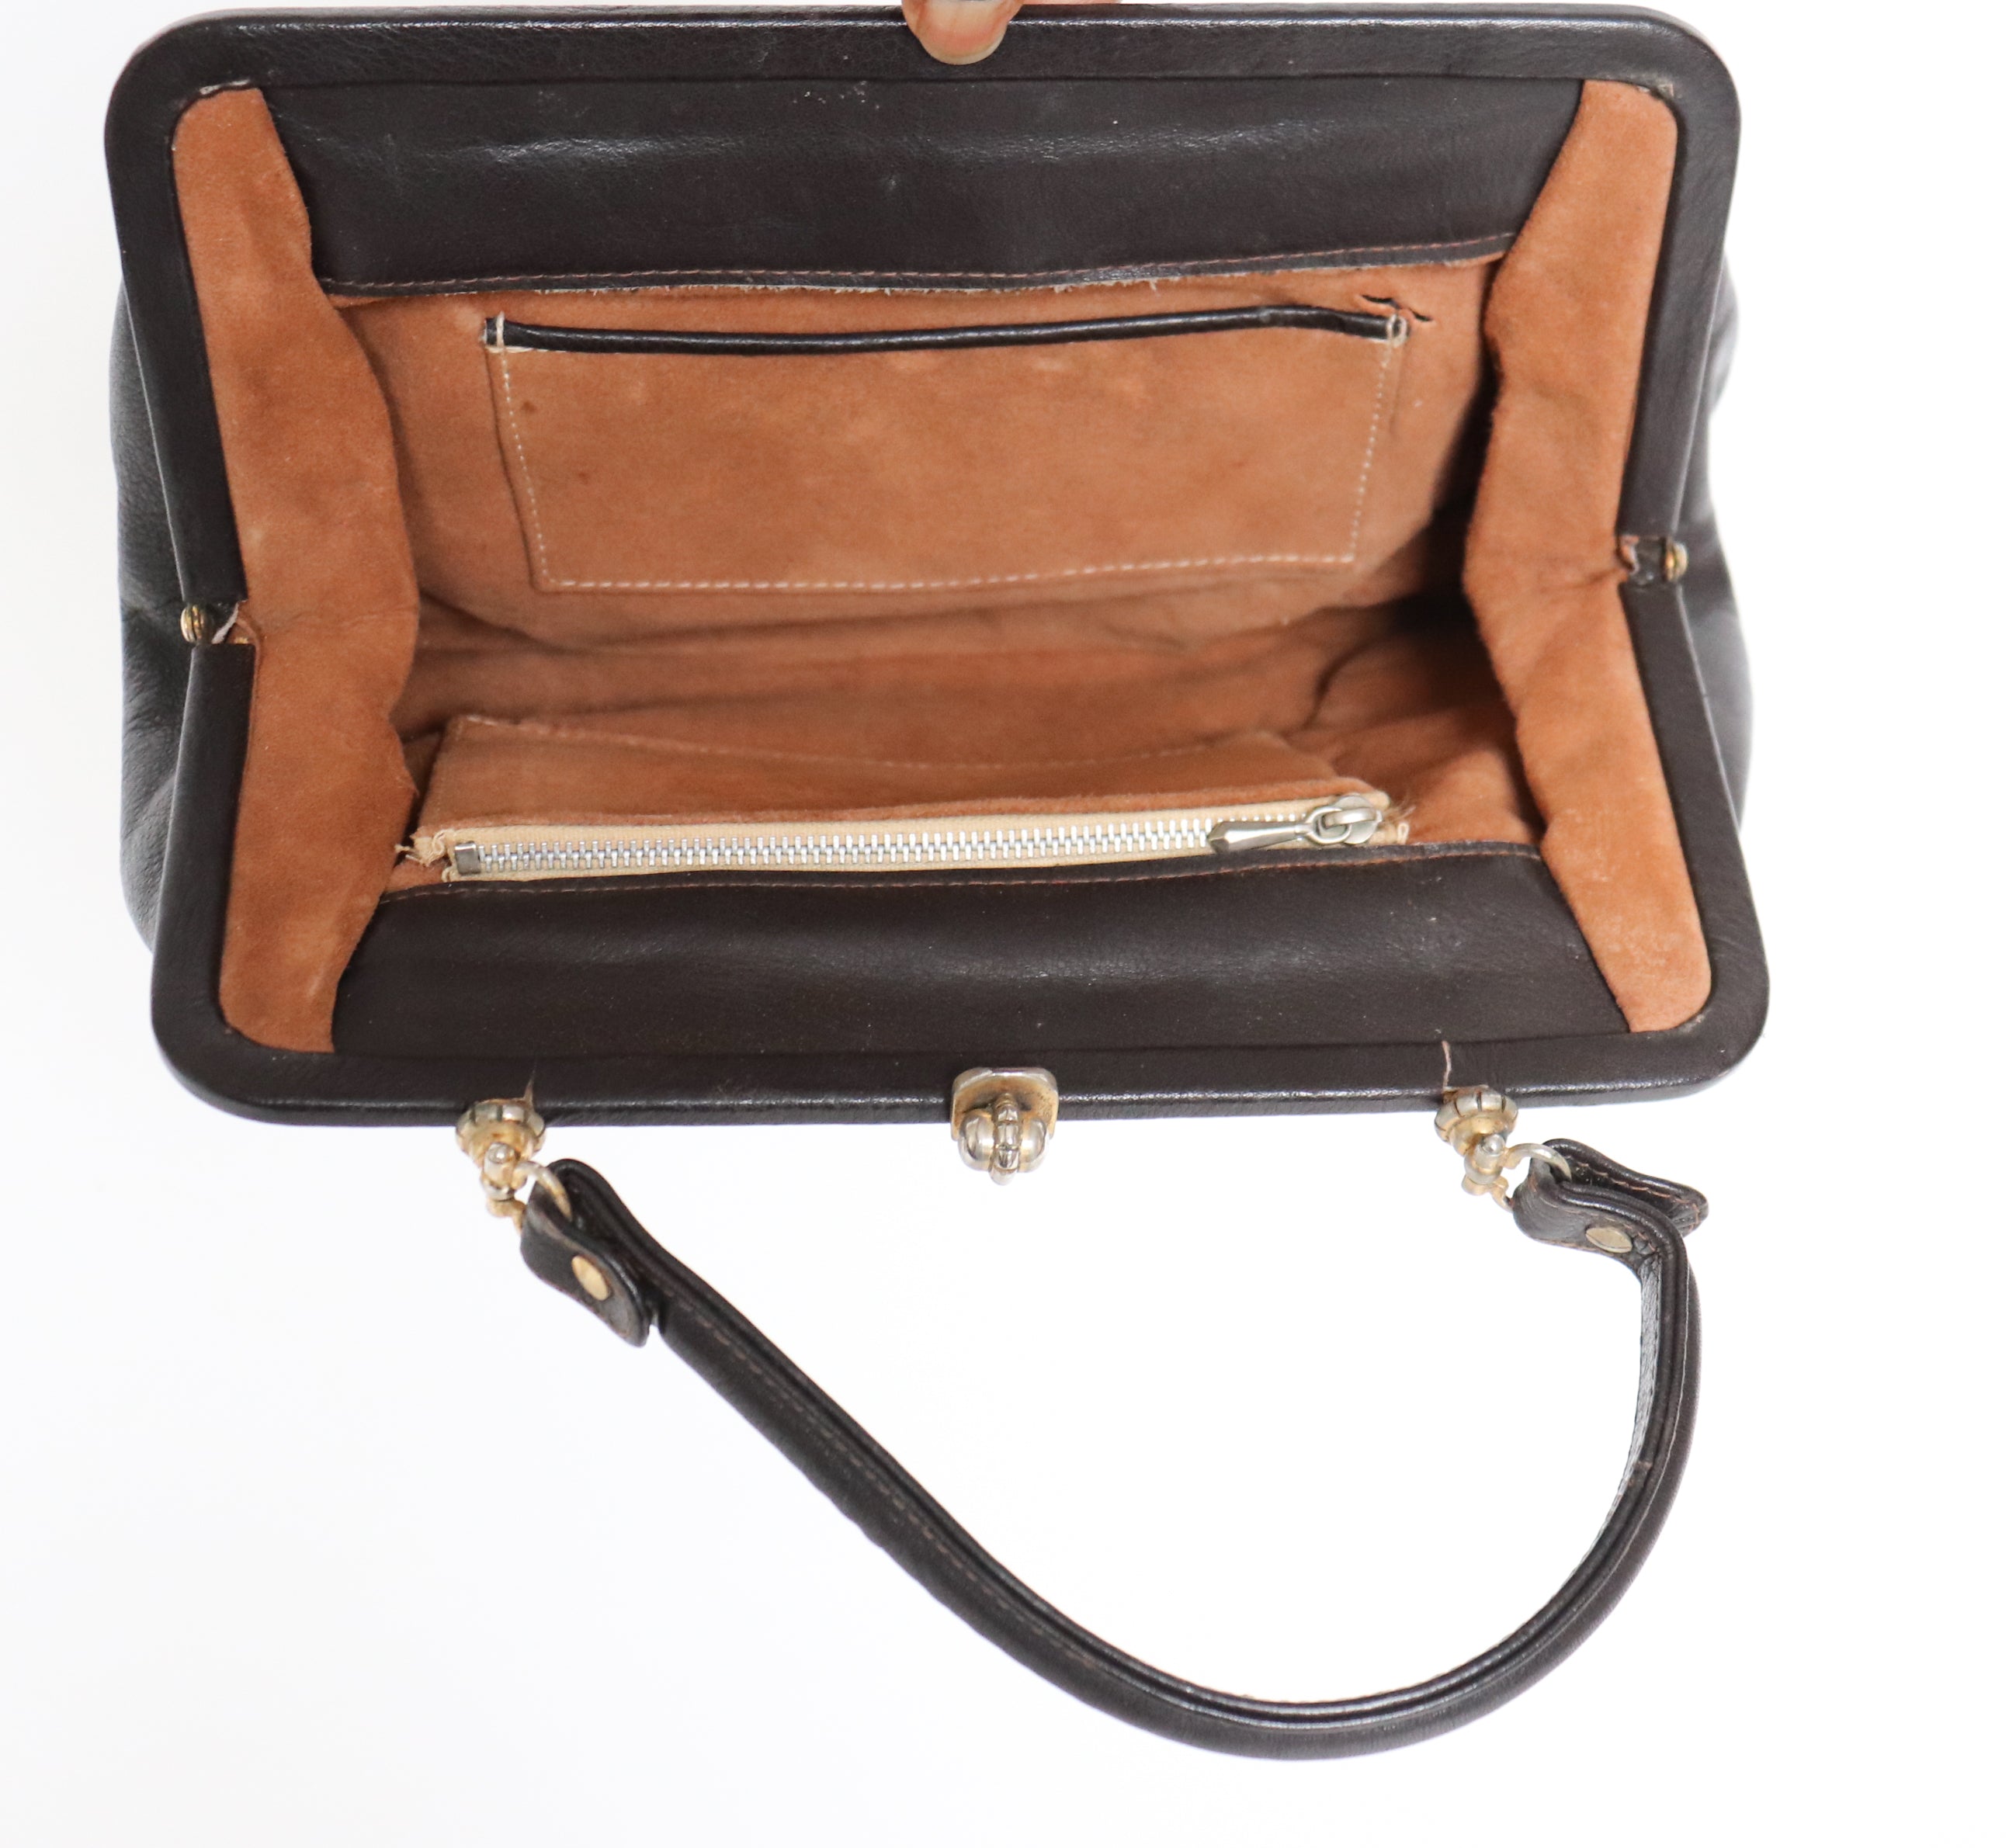 Vintage 1950s Top Handle Bag - Handbag - Brown Leather - Small